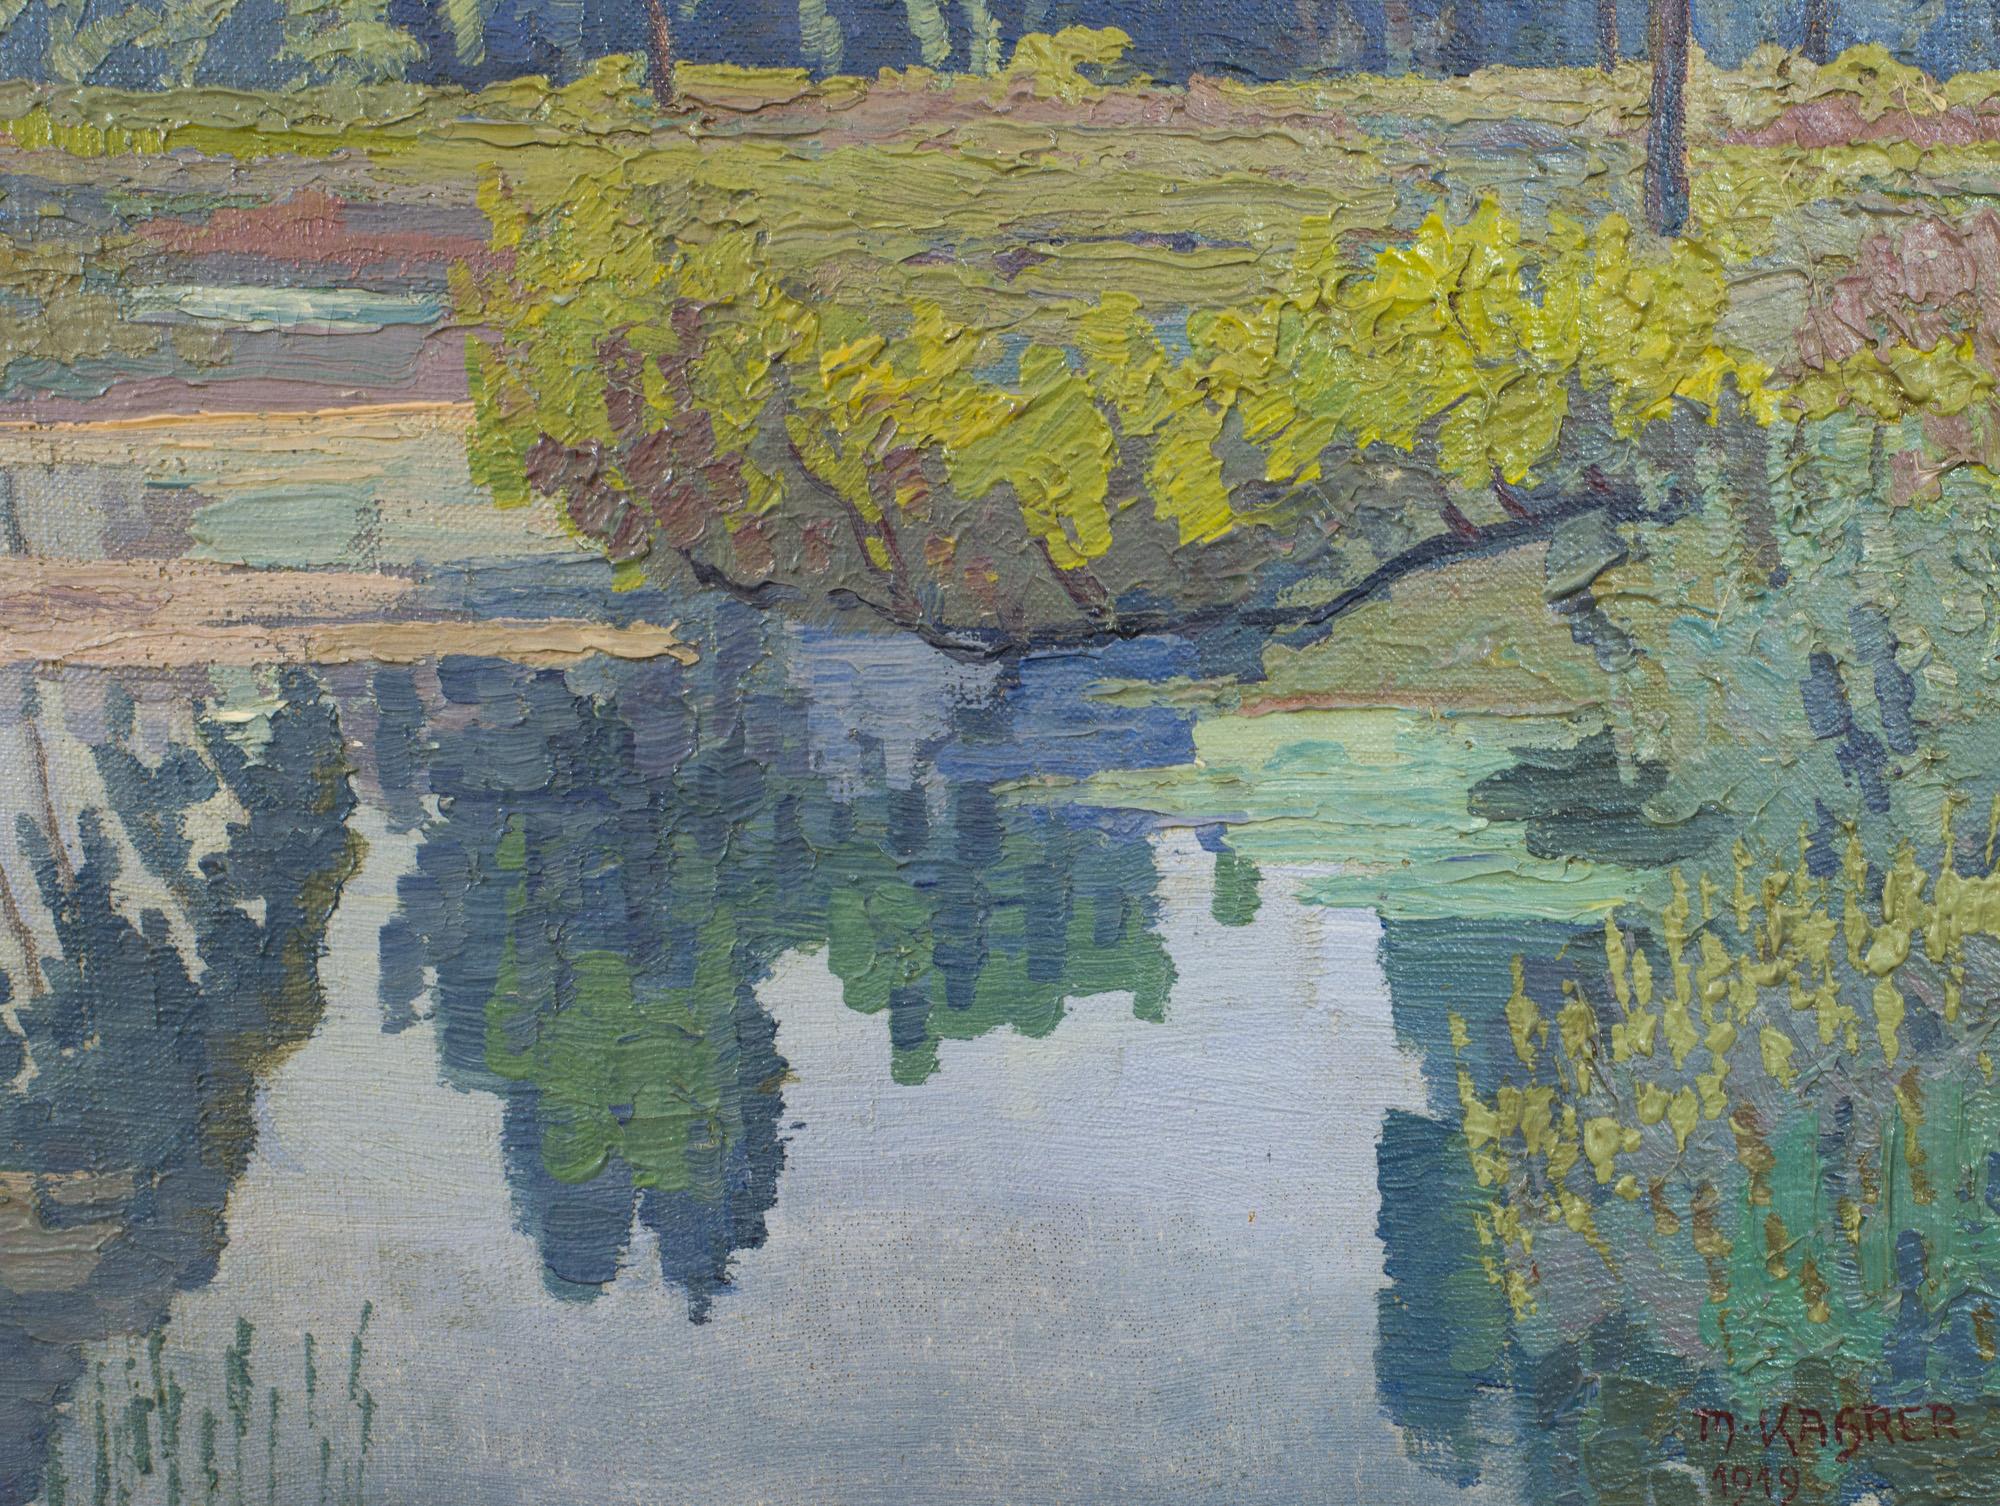 Début du 20ème siècle Peinture à l'huile - Paysage Au à Klosterneuburg - Max Kahrer 1919 - Modernisme classique en vente